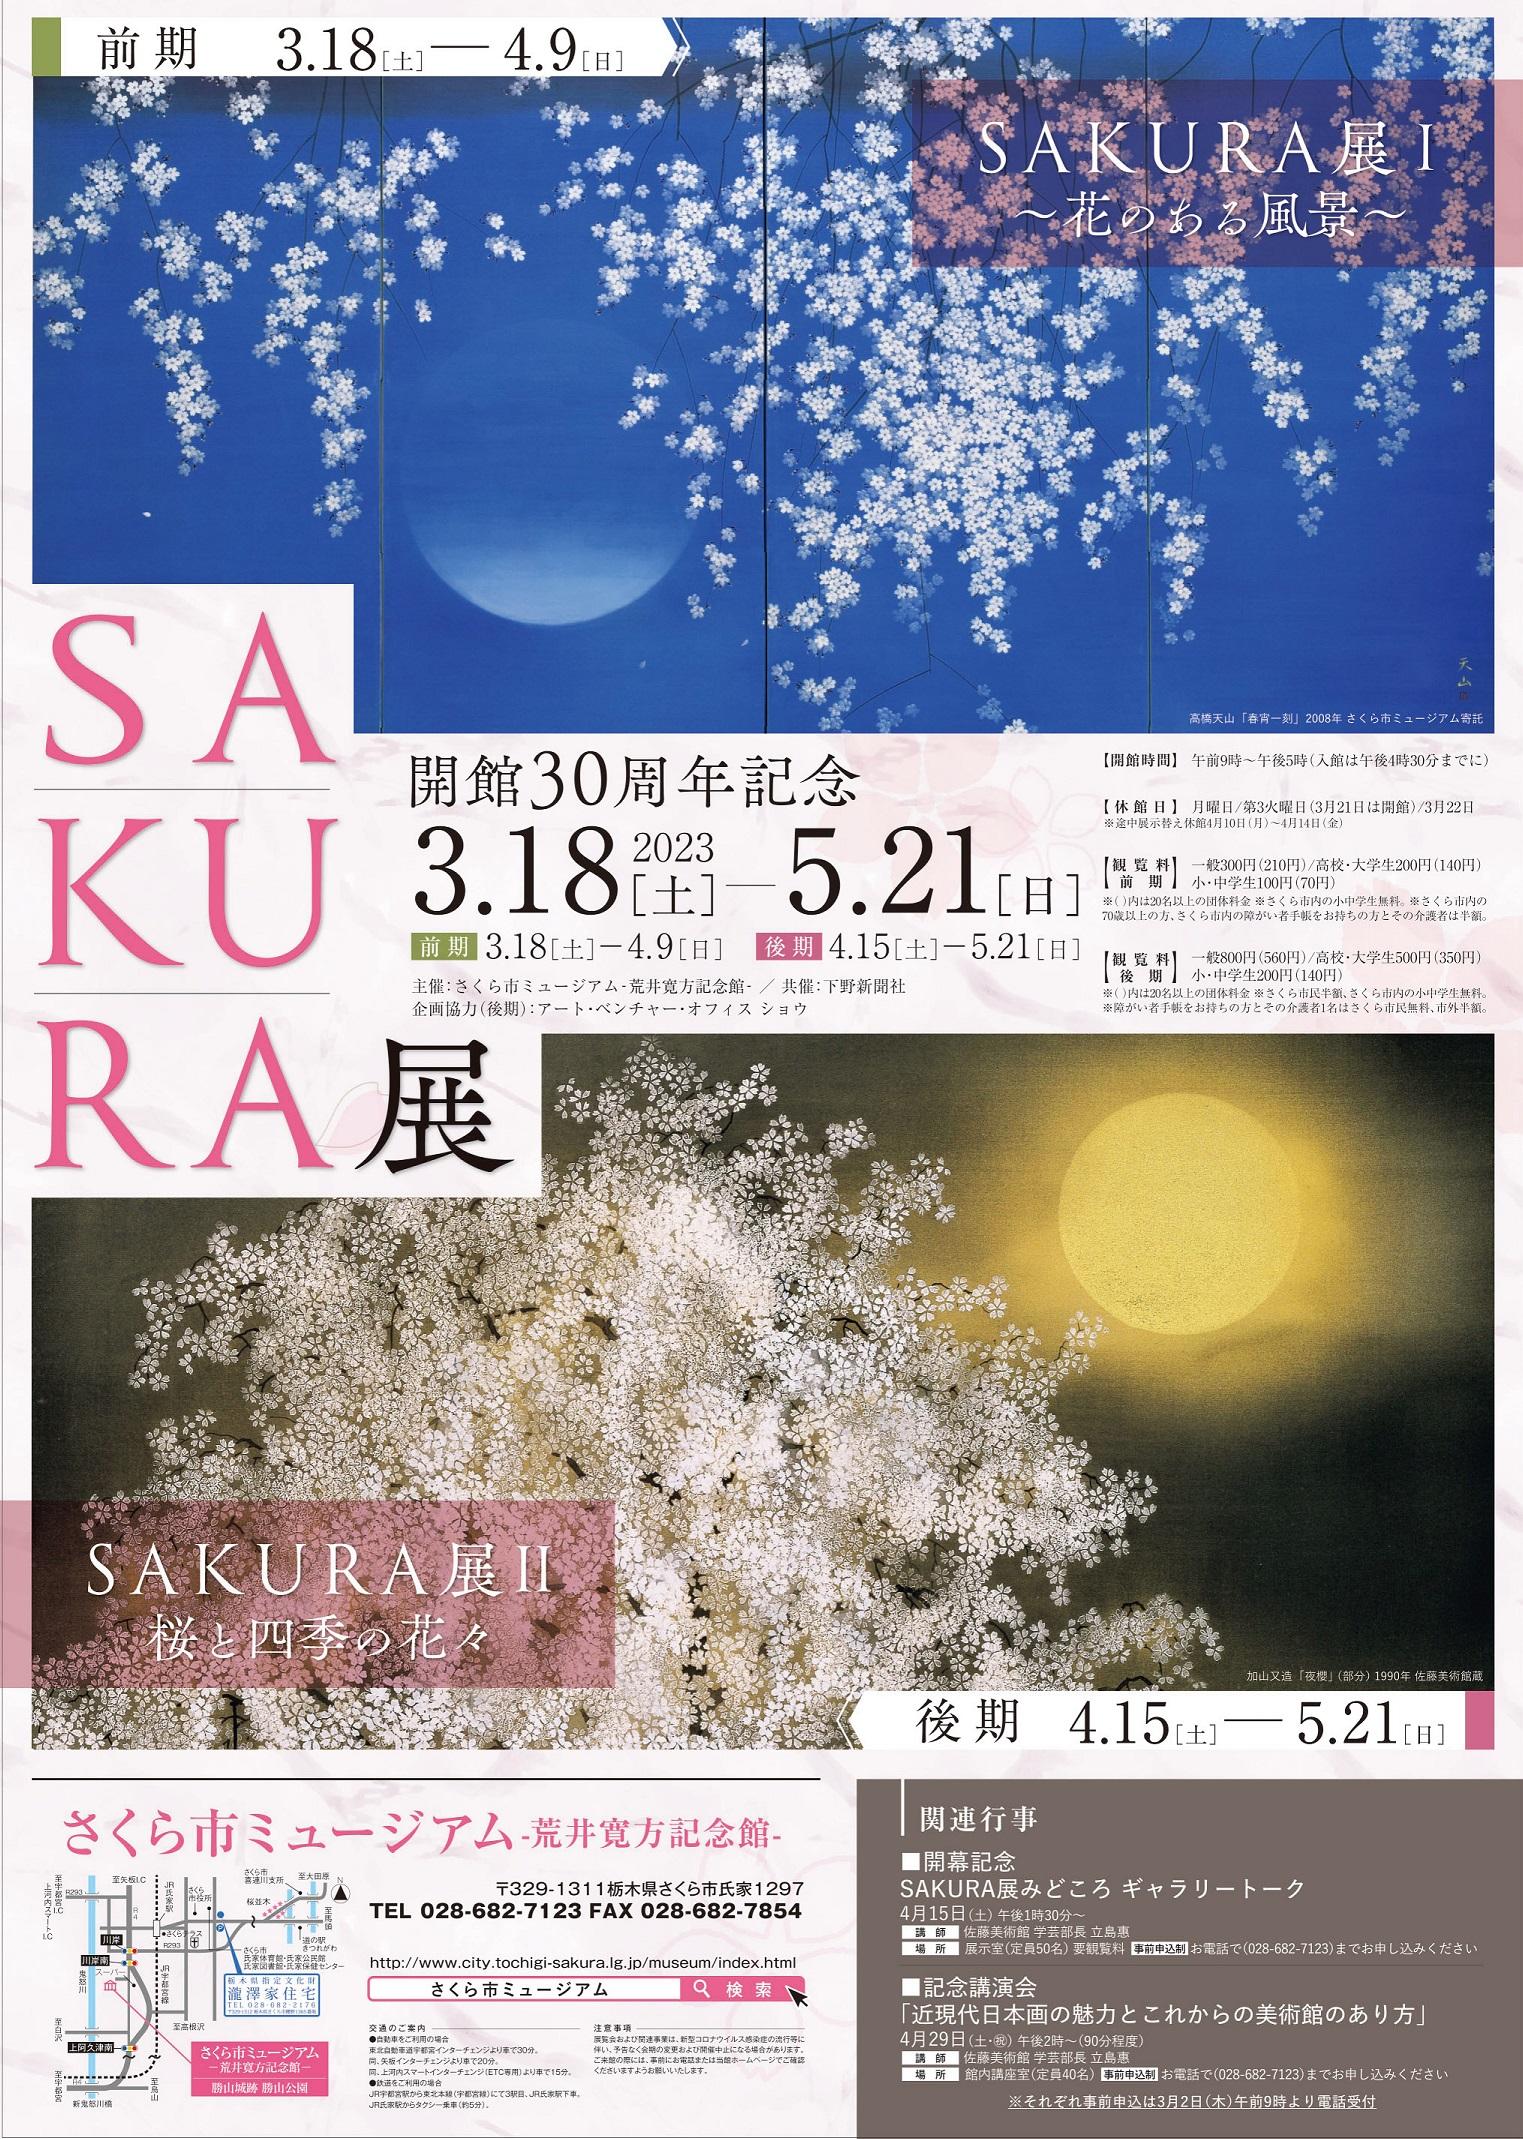 SAKURA展ポスター